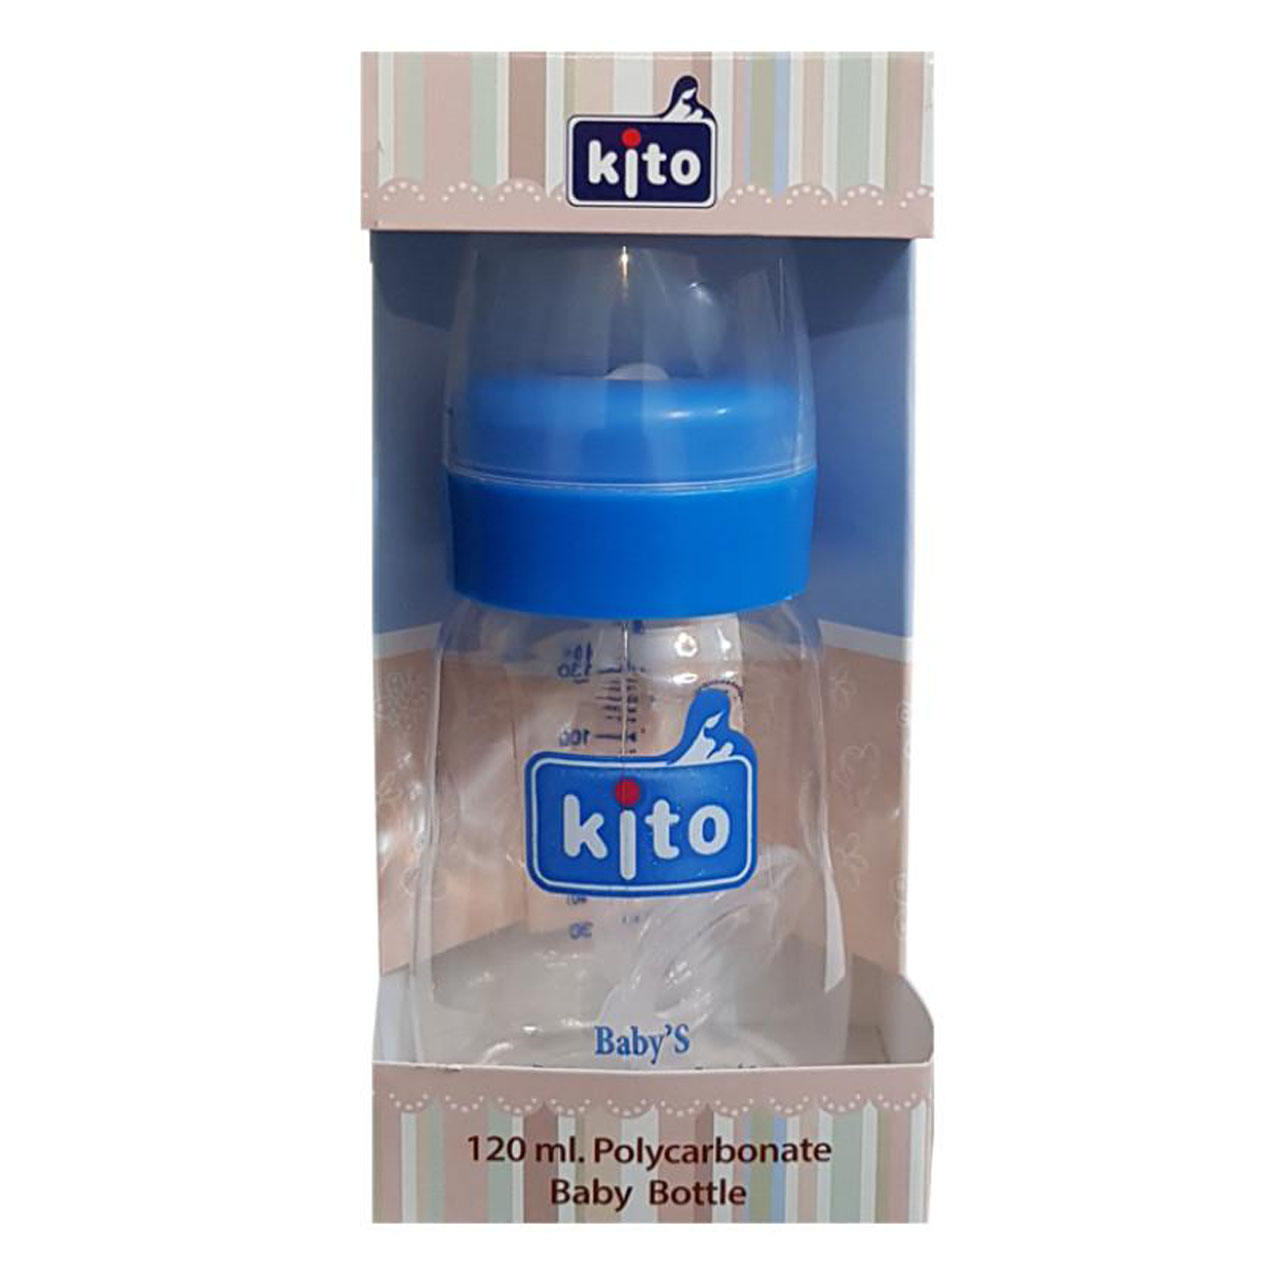 شیشه شیر نوزاد-کودک -لوازم نوزاد شیشه شیر کیتو کد 107 ظرفیت 120میلی لیتر